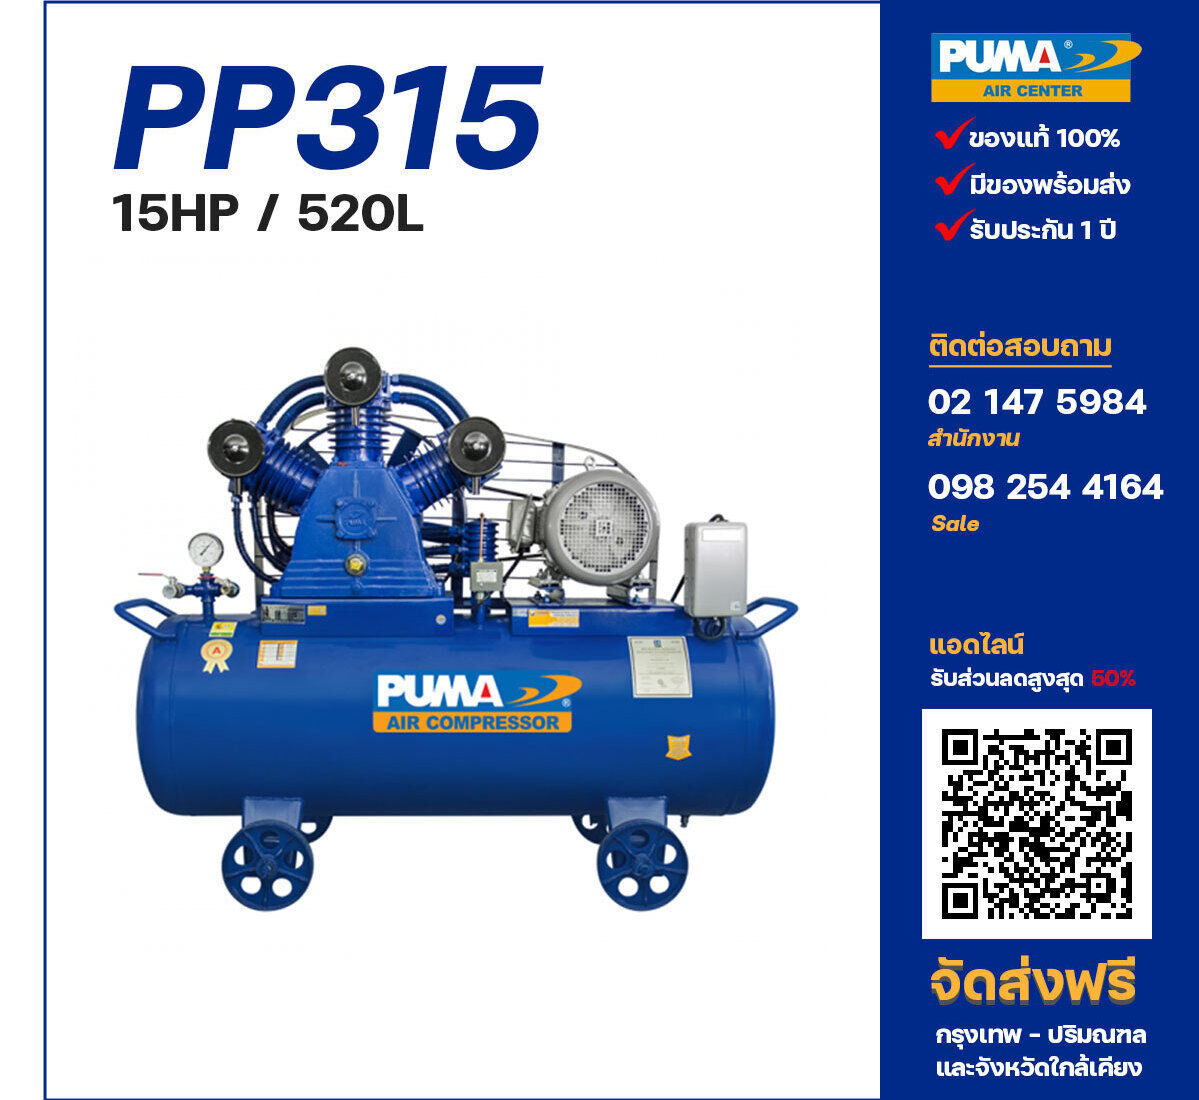 ปั๊มลมพูม่า PUMA PP315-PPM380V ปั๊มลมลูกสูบ ขนาด 3 สูบ 15 แรงม้า 520 ลิตร PUMA พร้อมมอเตอร์ PUMA ไฟ 380V ส่งฟรี กรุงเทพฯ-ปริมณฑล รับประกัน 1 ปี